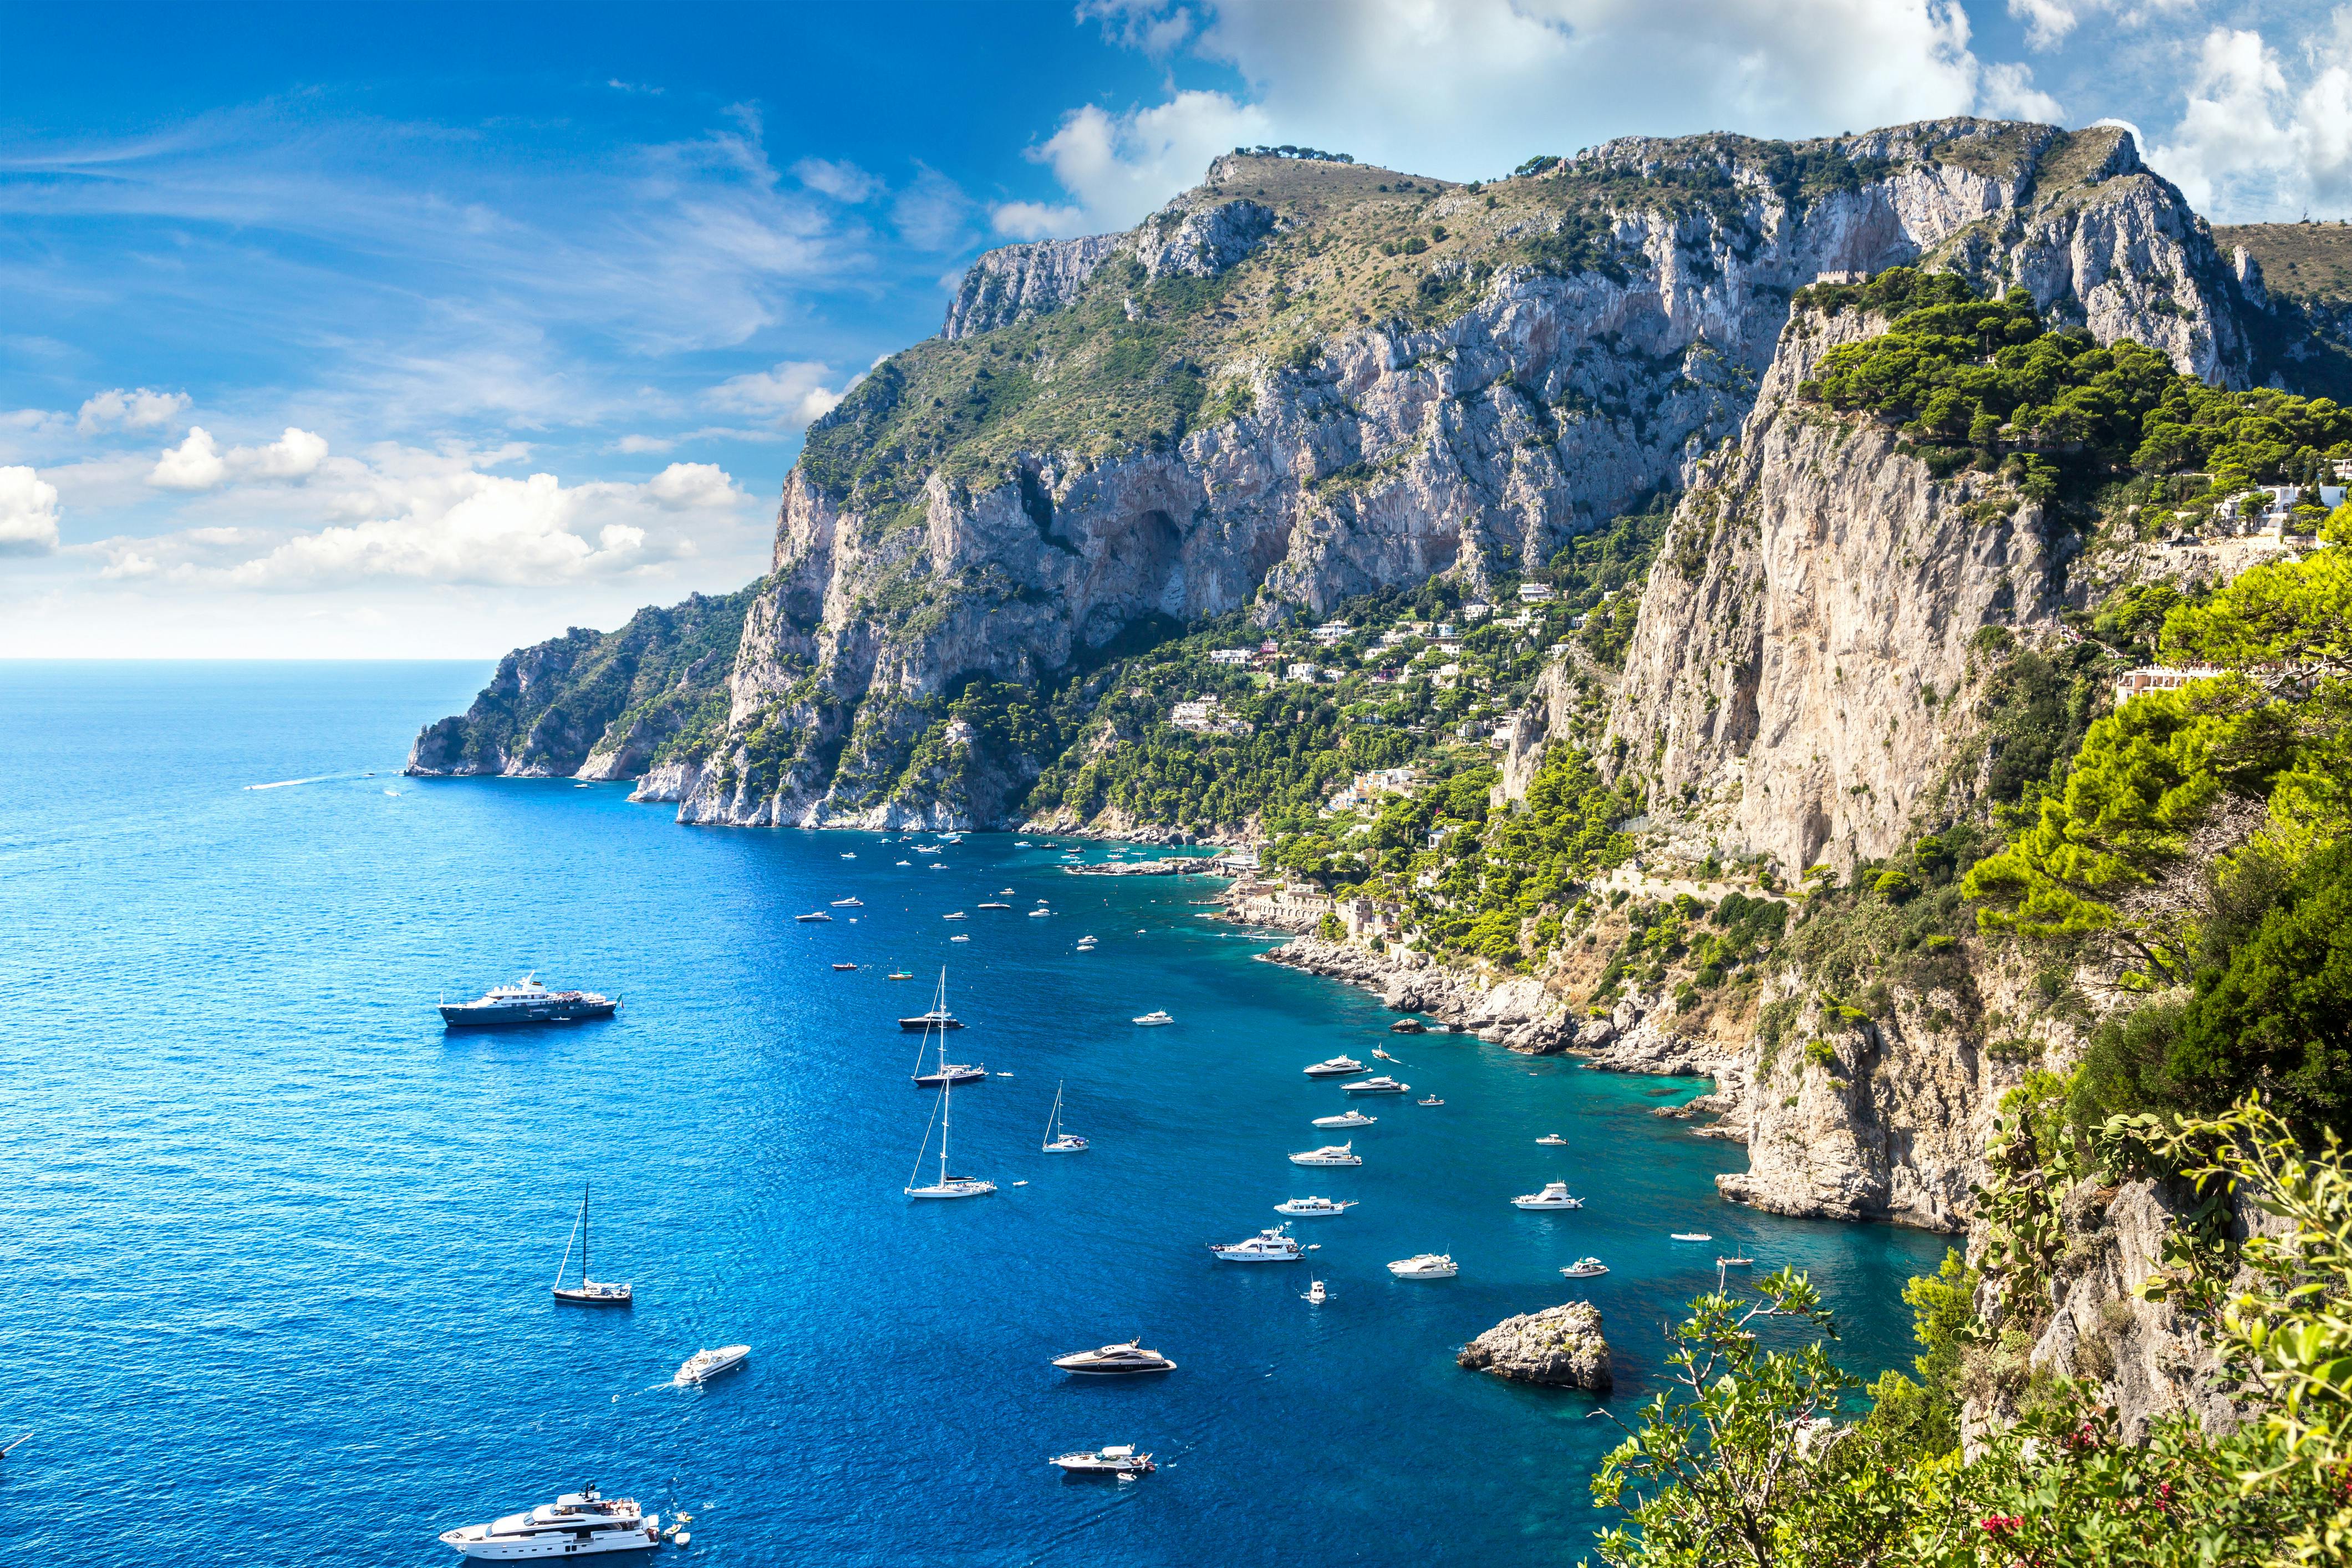 Tagesausflug nach Capri mit Mittagessen